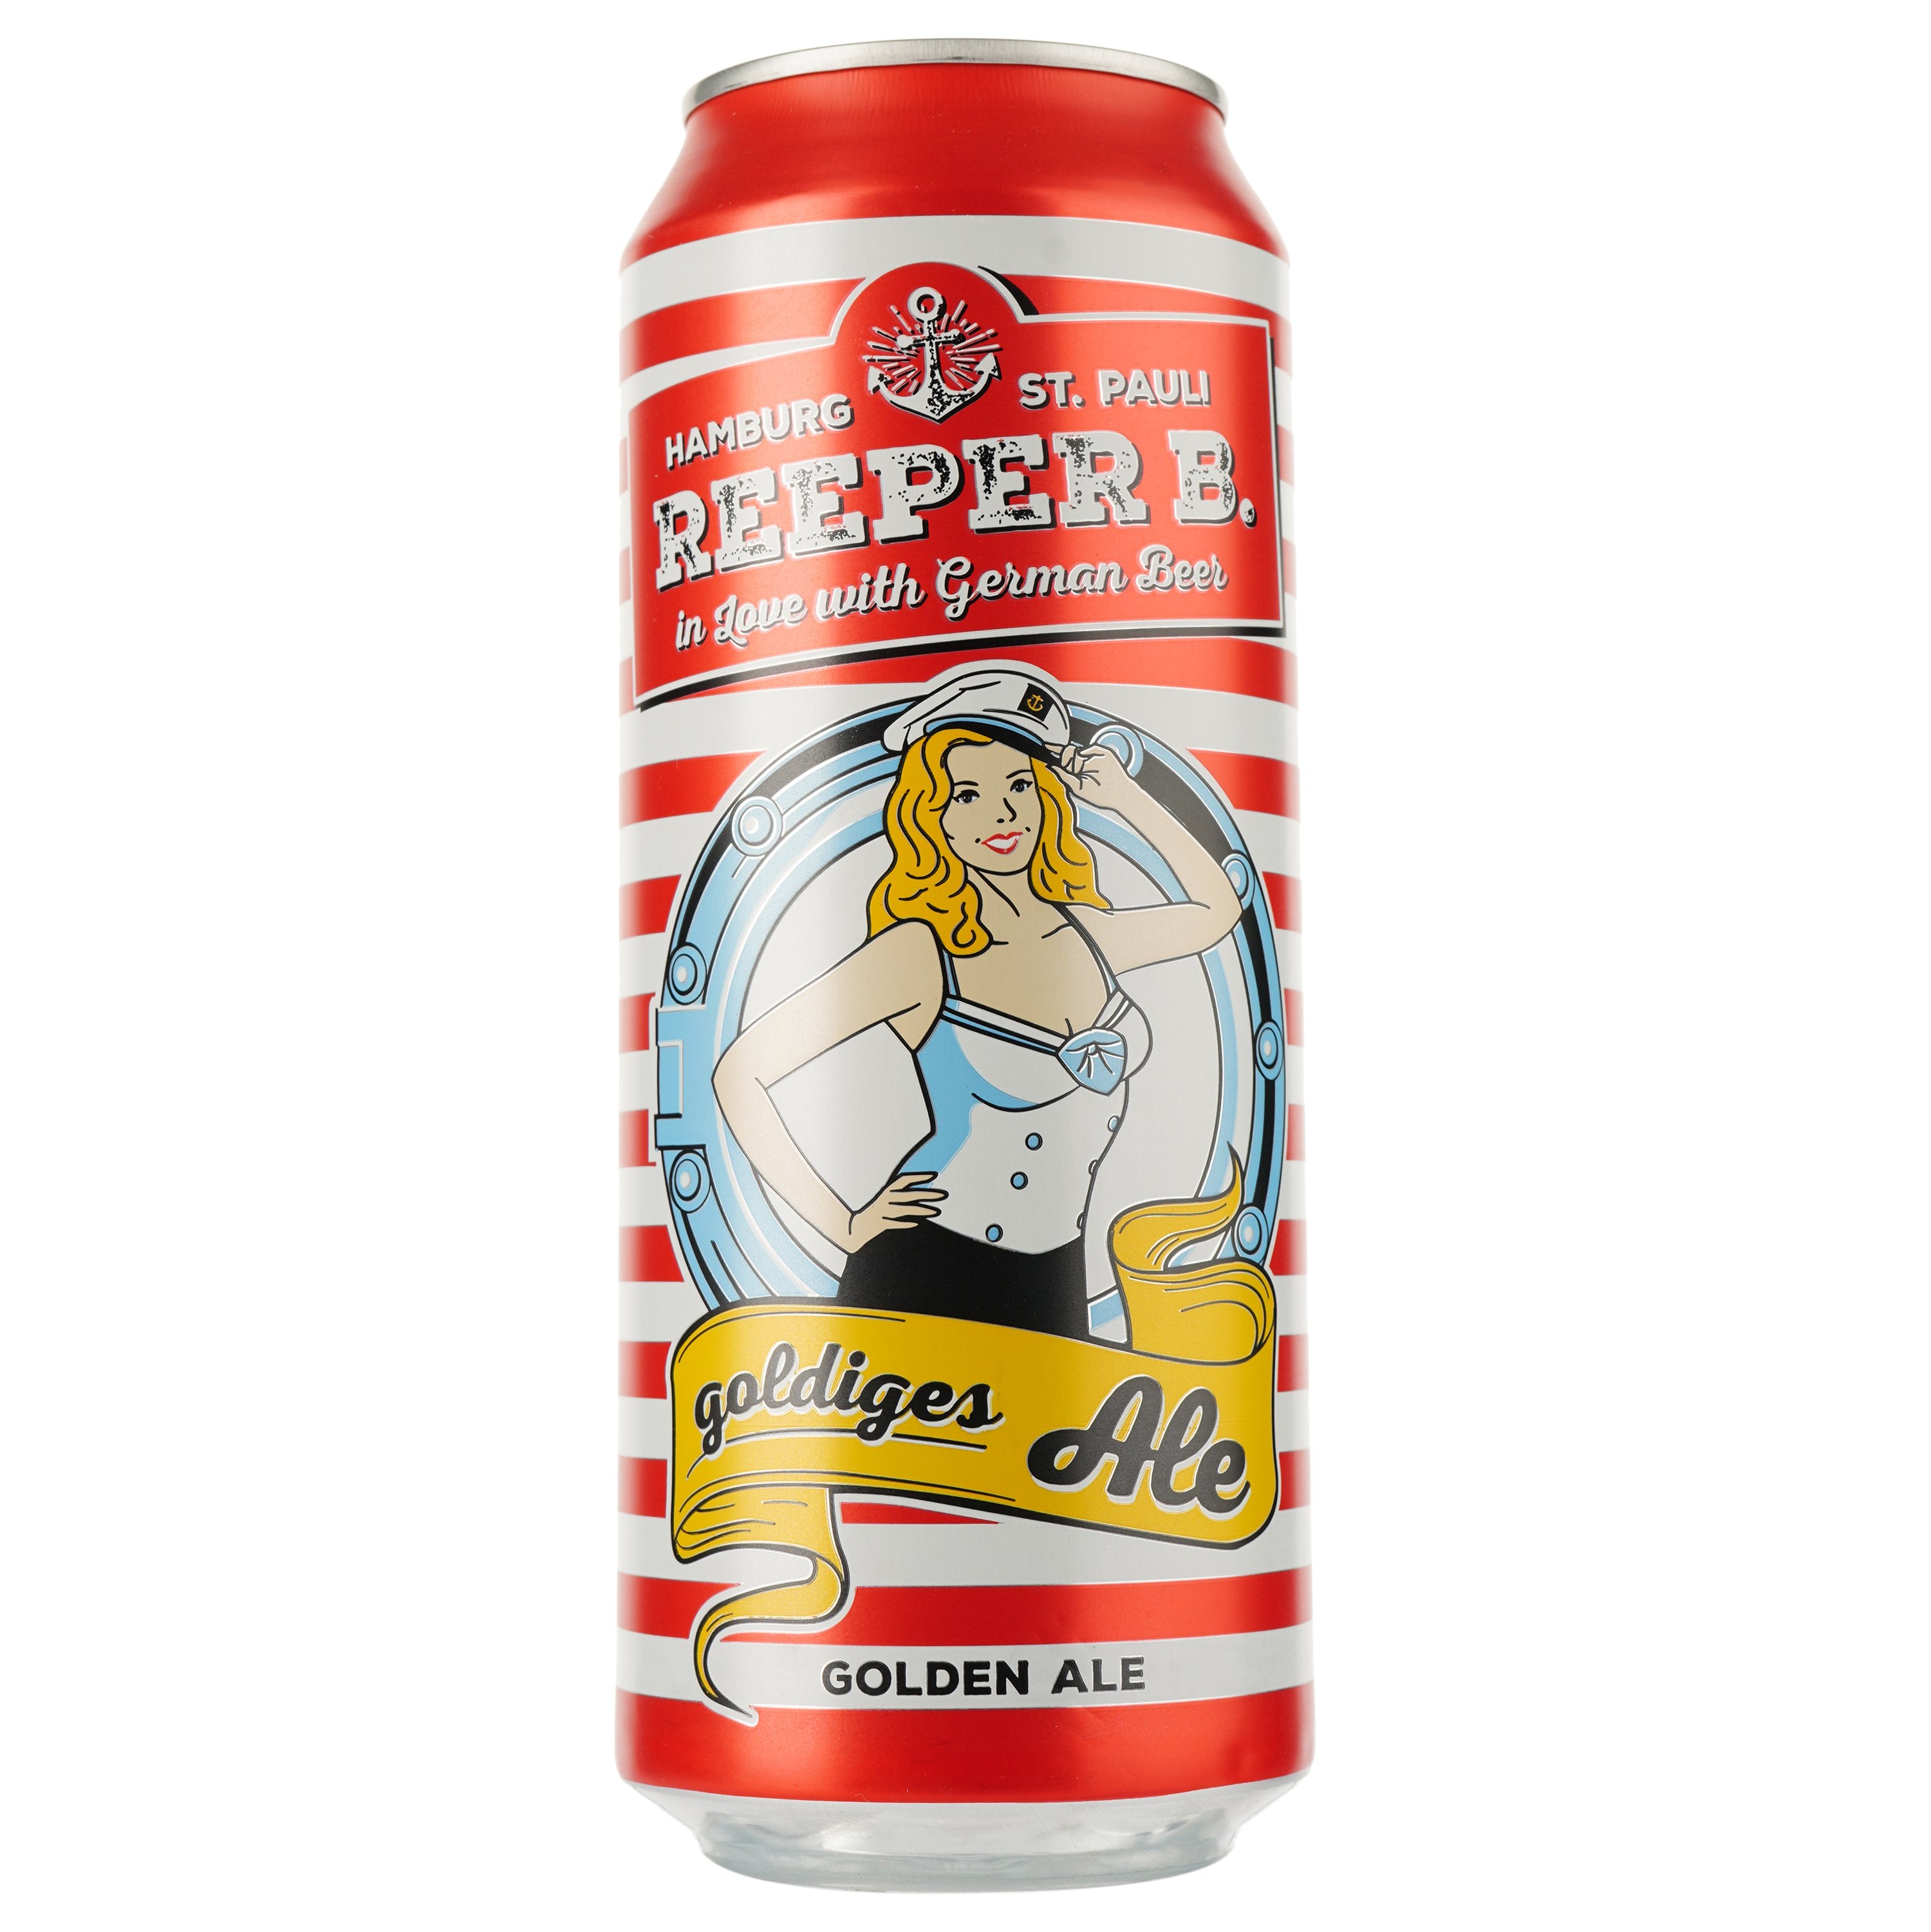 Пиво Reeper B Golden Ale, світле, фільтроване, 4,8%, з/б, 0,5 л - фото 1